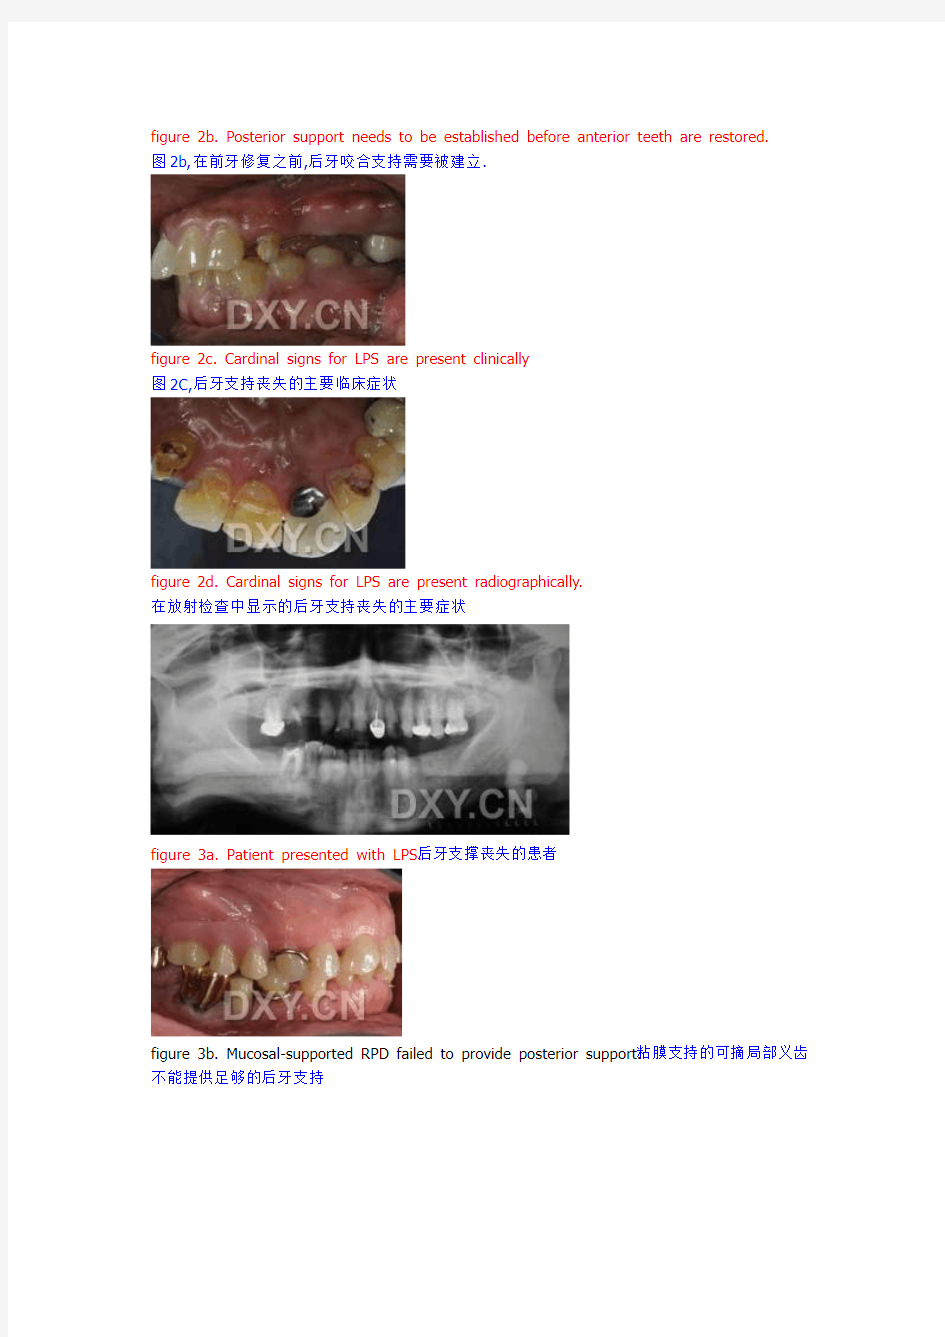 后牙咬合对前牙修复的影响